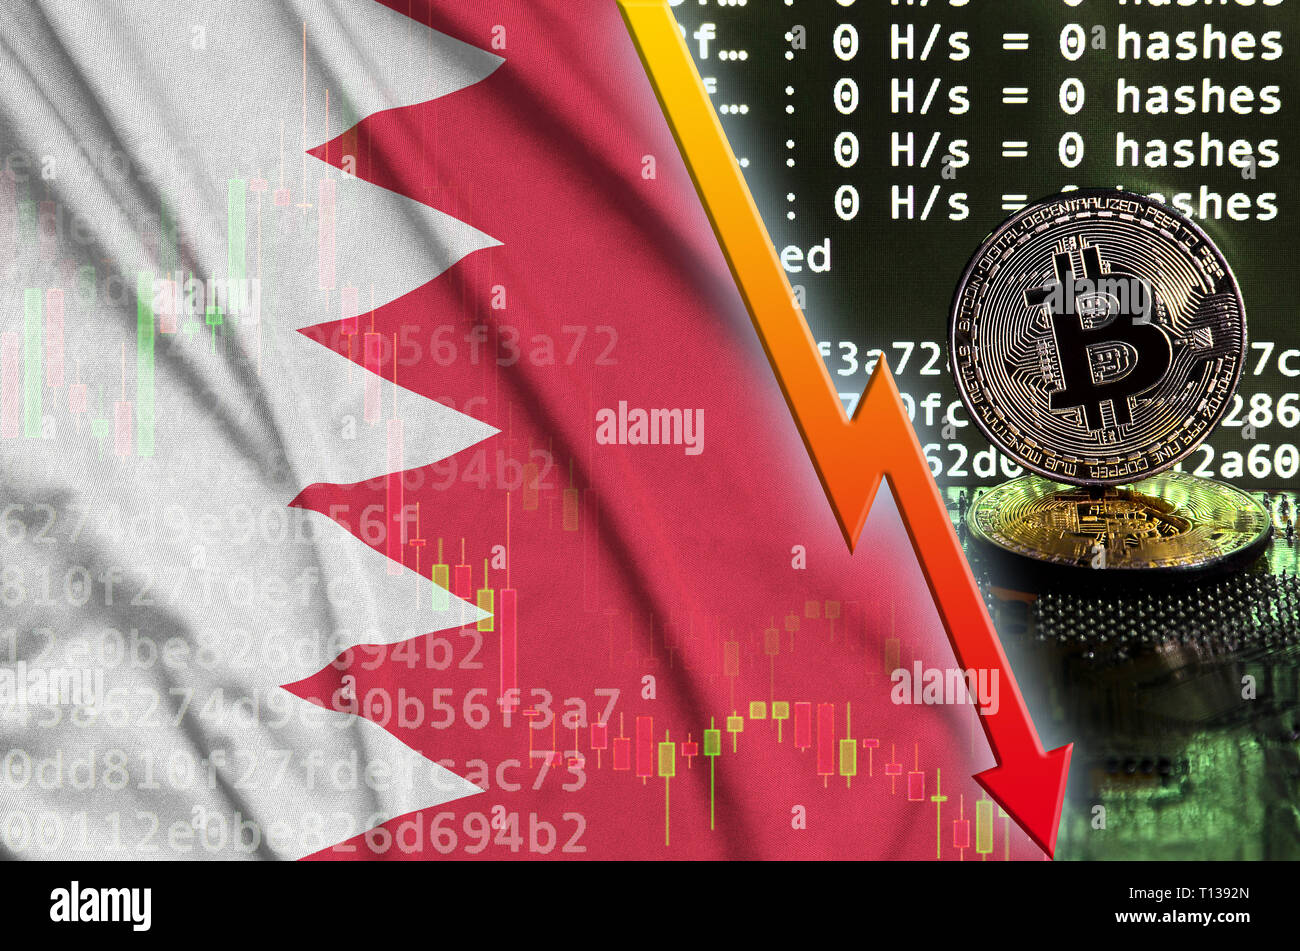 Drapeau de Bahreïn et la baisse de flèche rouge sur l'écran d'exploitation minière bitcoin et deux d'or physique des bitcoins. Concept de conversion faible dans cryptocurrency mining Banque D'Images